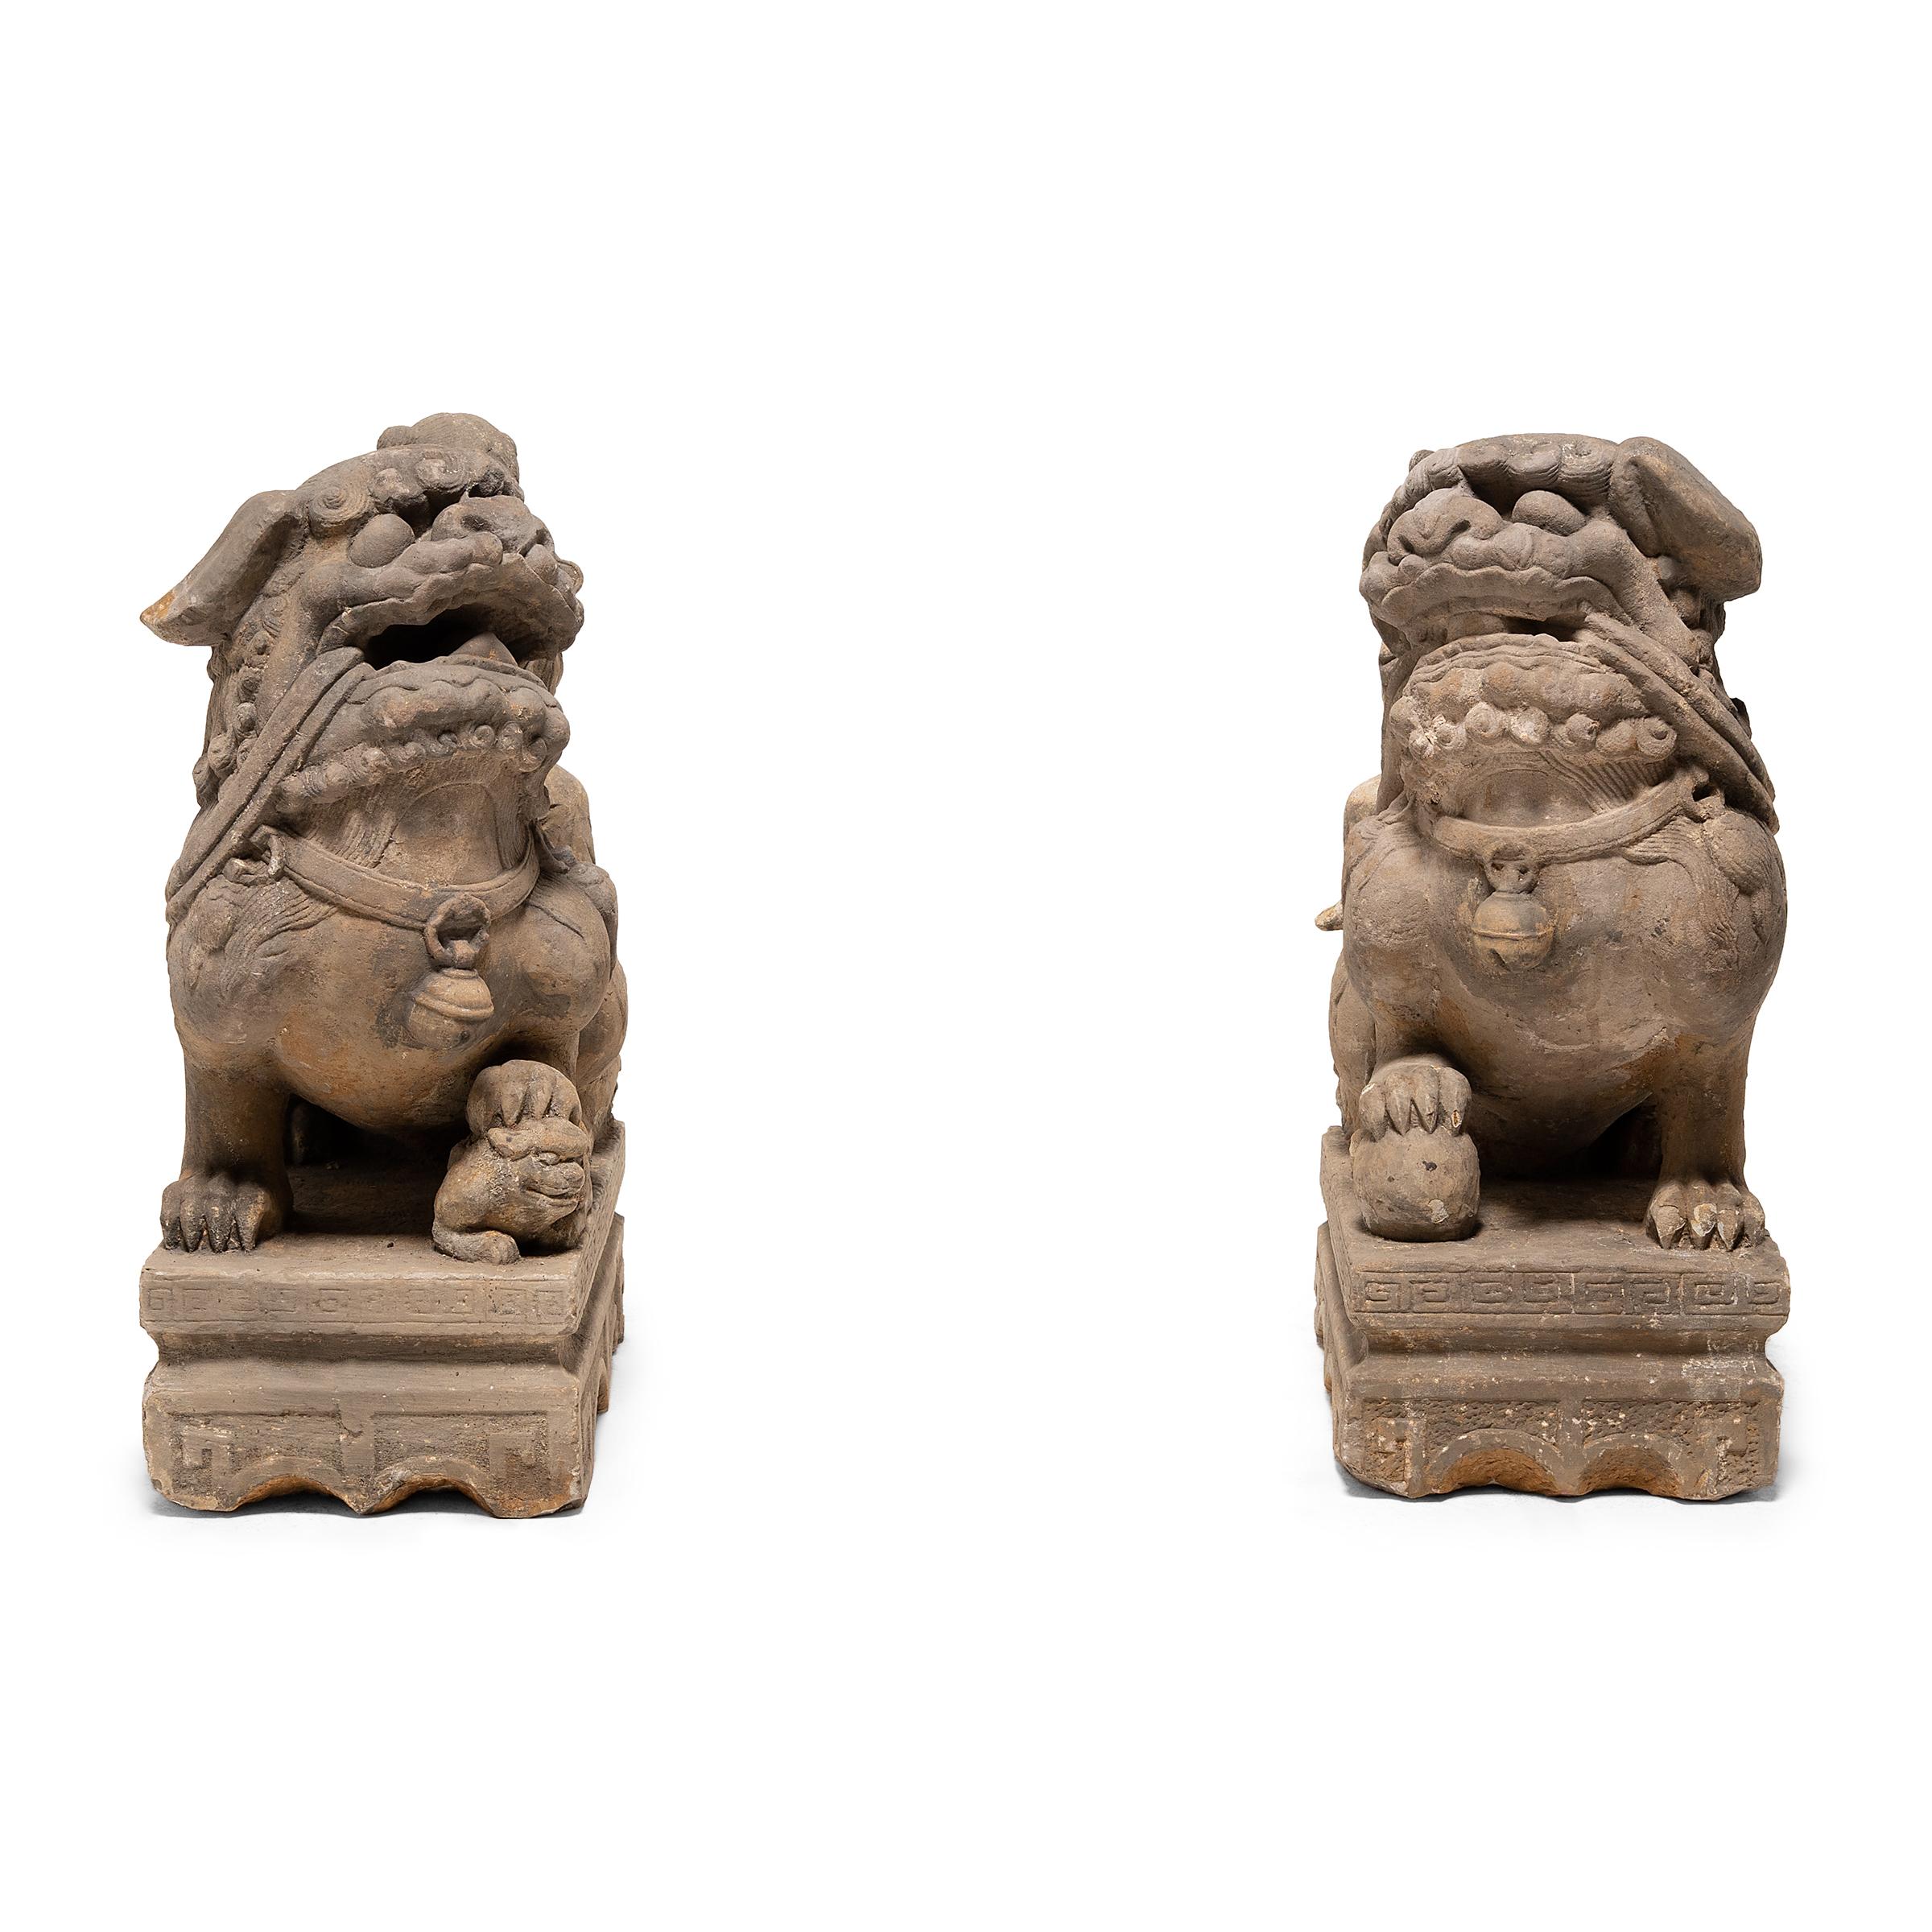 Dieses Paar kunstvoll geschnitzter Fu-Löwen aus Kalkstein schützte einst den Eingang eines großen Hofhauses im China des 19. Jahrhunderts. Die Fabelwesen, die auch als Shizi oder Foo Dogs bekannt sind, gelten als wohlwollende Beschützer und werden